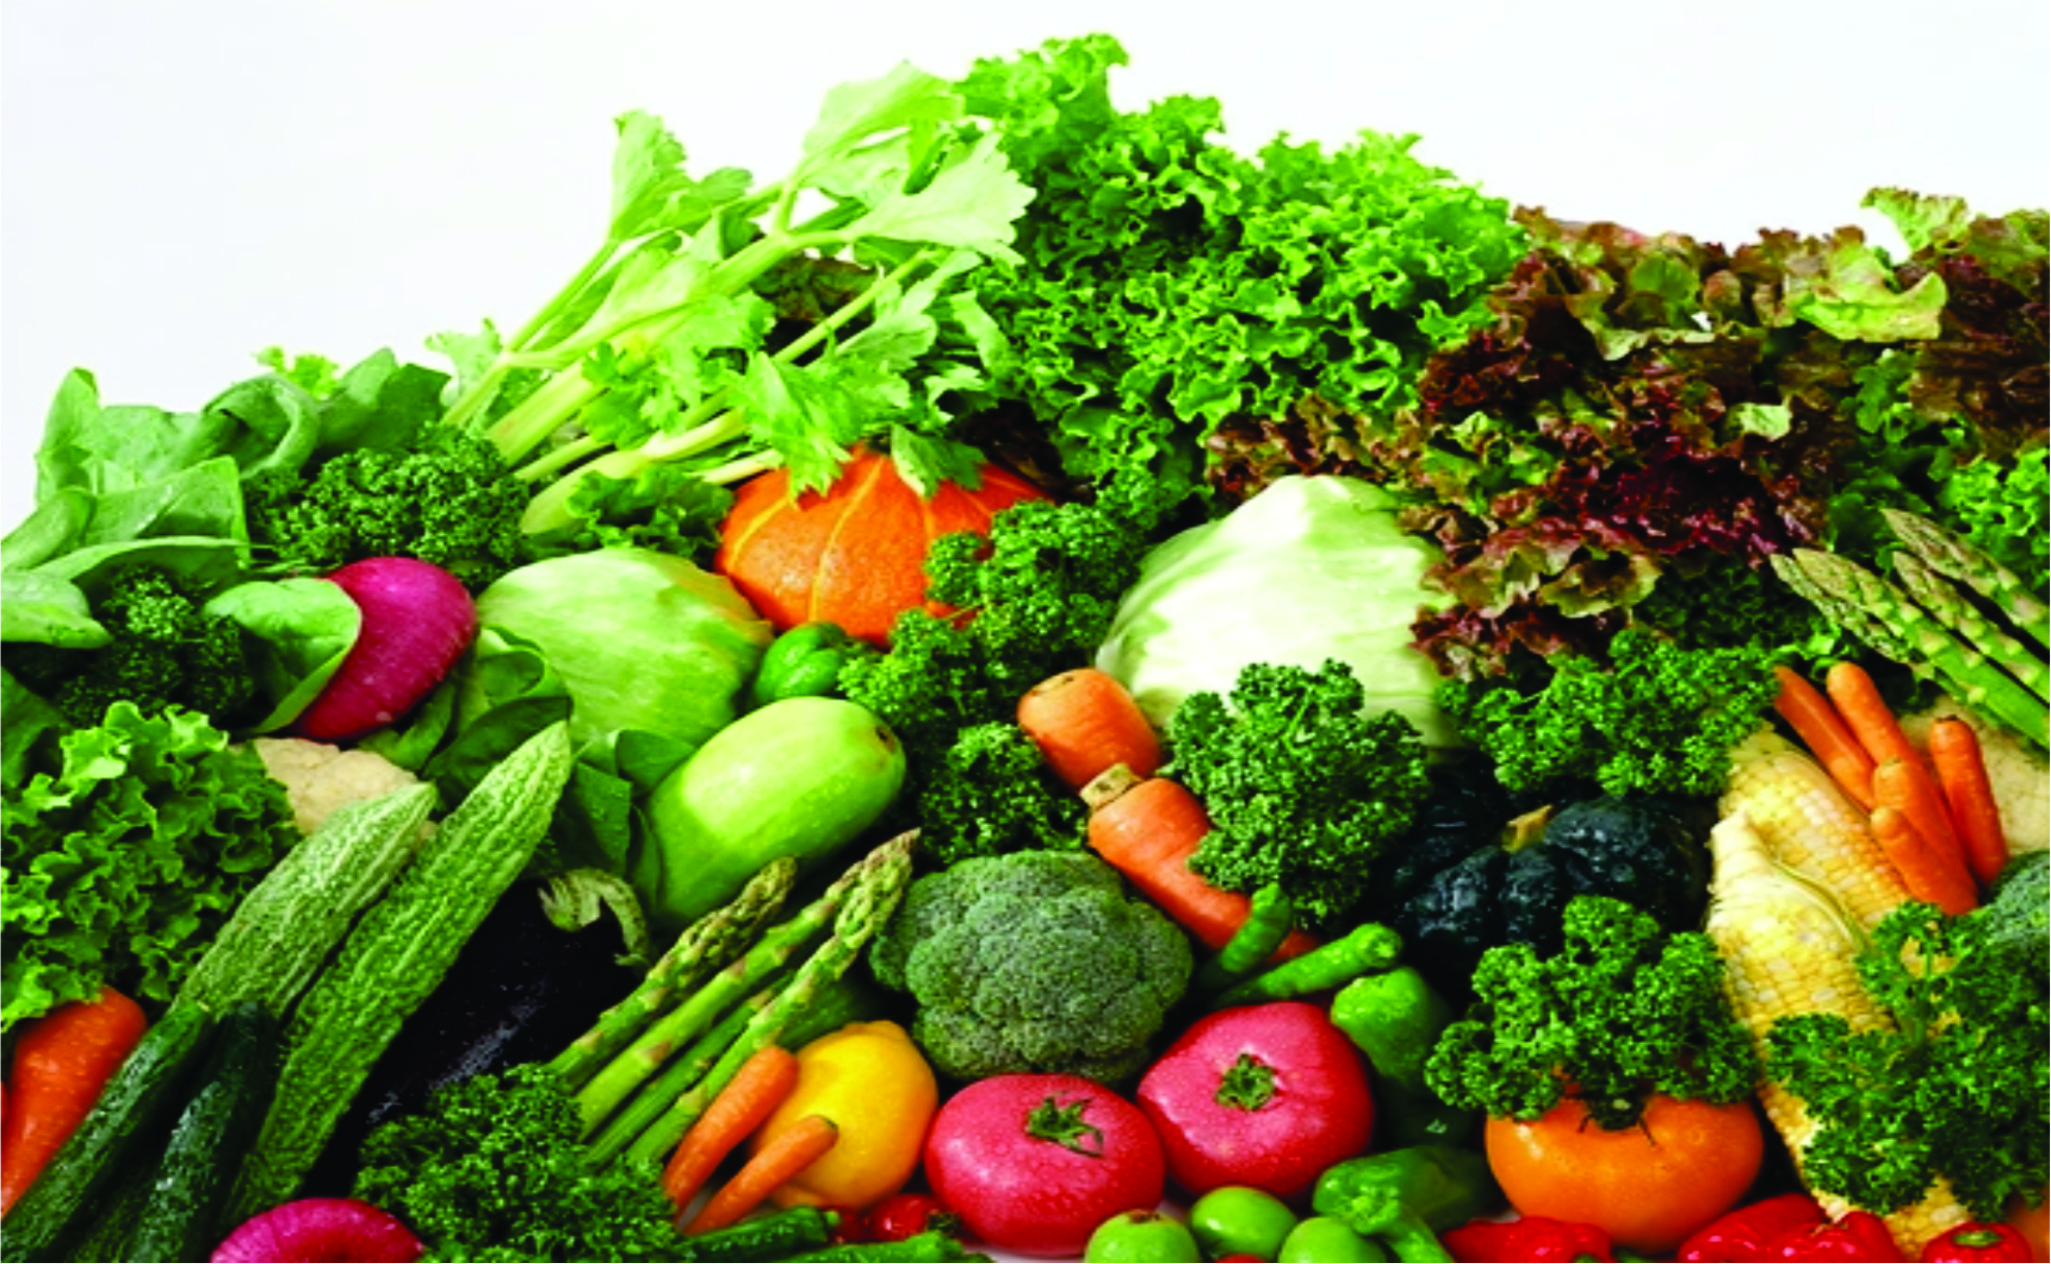 Nâng cao năng suất lao động, cải thiện sức khỏe bằng việc bổ sung rau xanh và các loại hoa quả